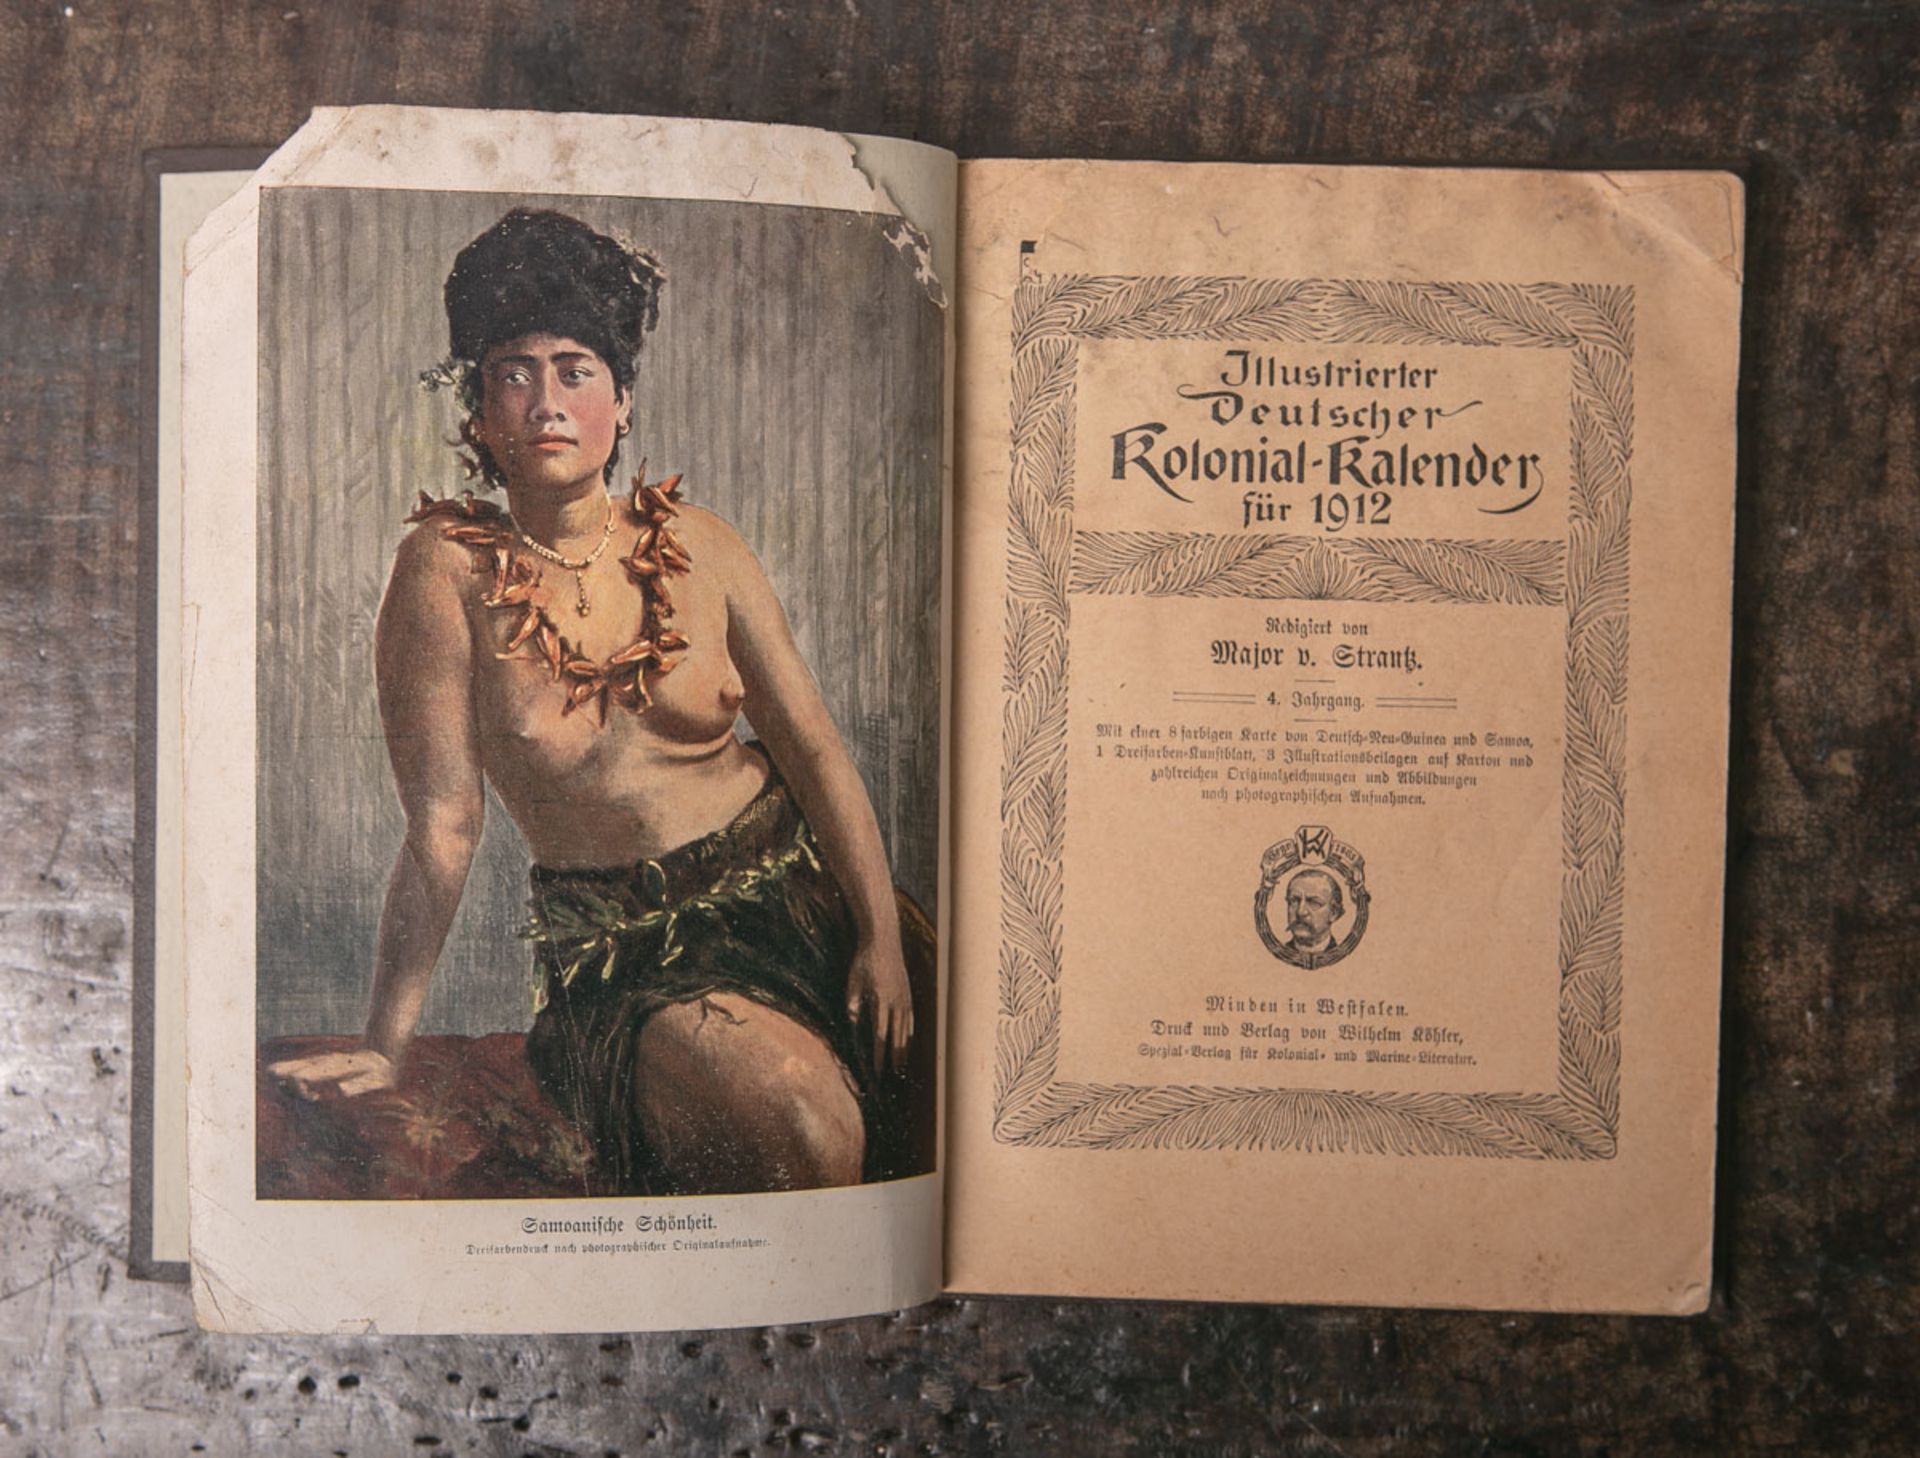 „Illustrierter Deutscher Kolonial-Kalender für 1912", redigiert von Major v. Strantz, 4. Jahrgang,